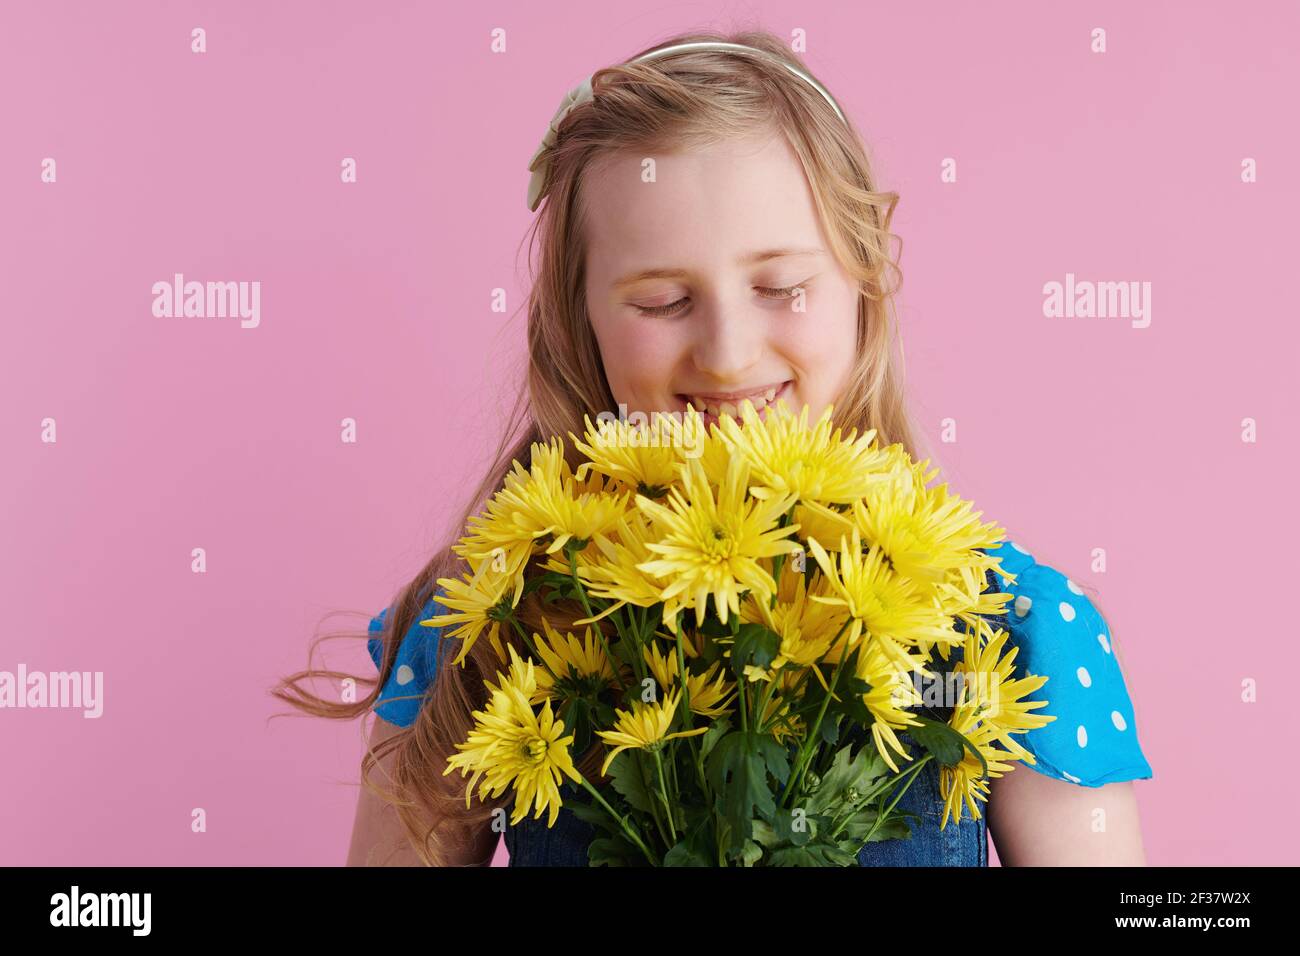 Entspannte stilvolle Mädchen mit langen welligen blonden Haaren mit gelben Chrysanthemen Blumen isoliert auf rosa Hintergrund. Stockfoto